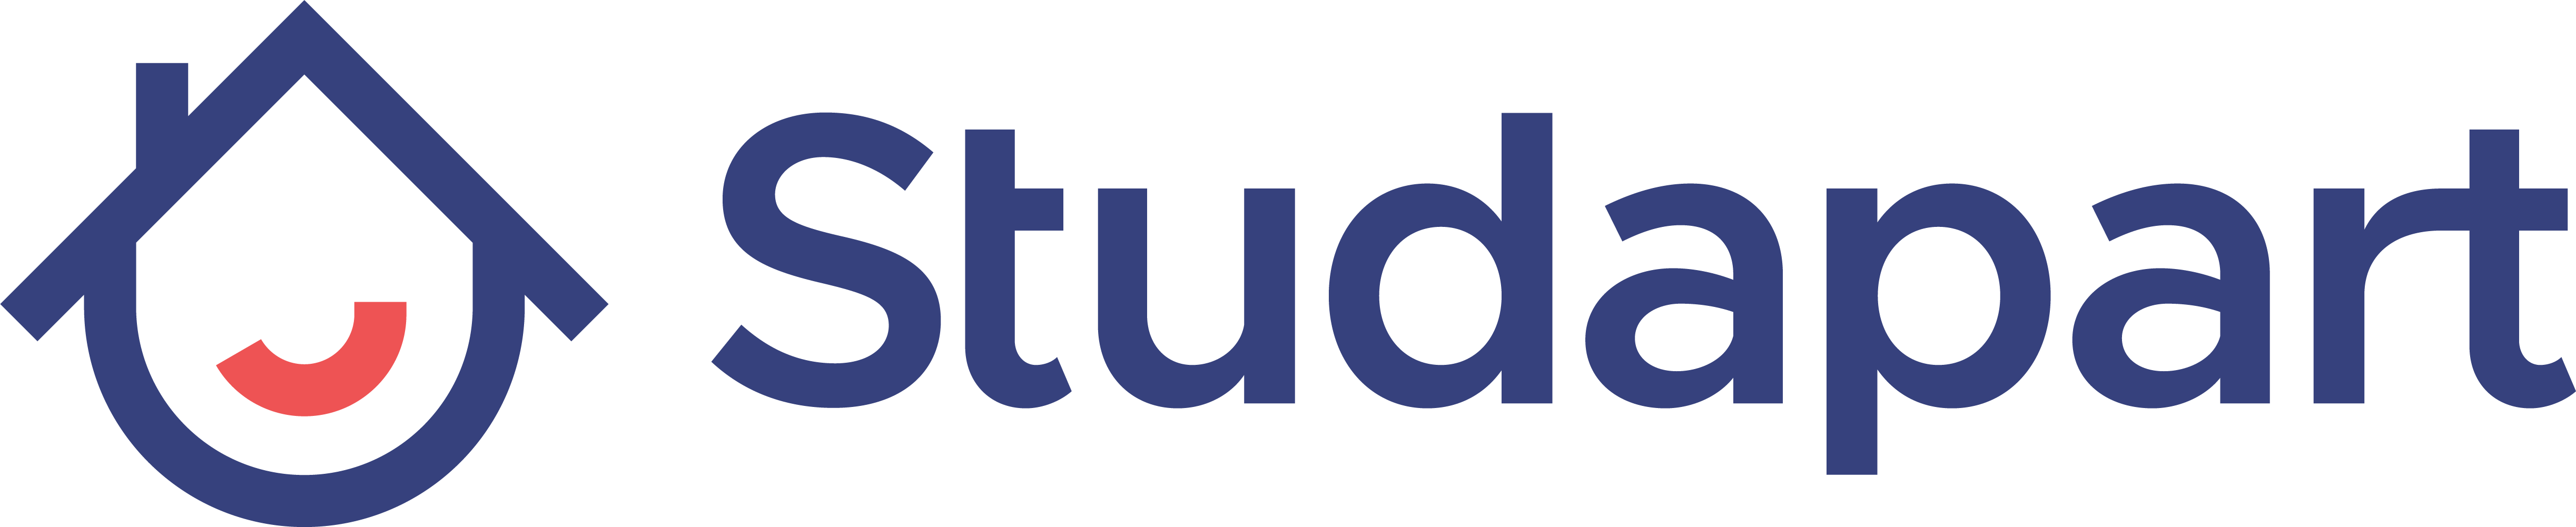 studapart logo